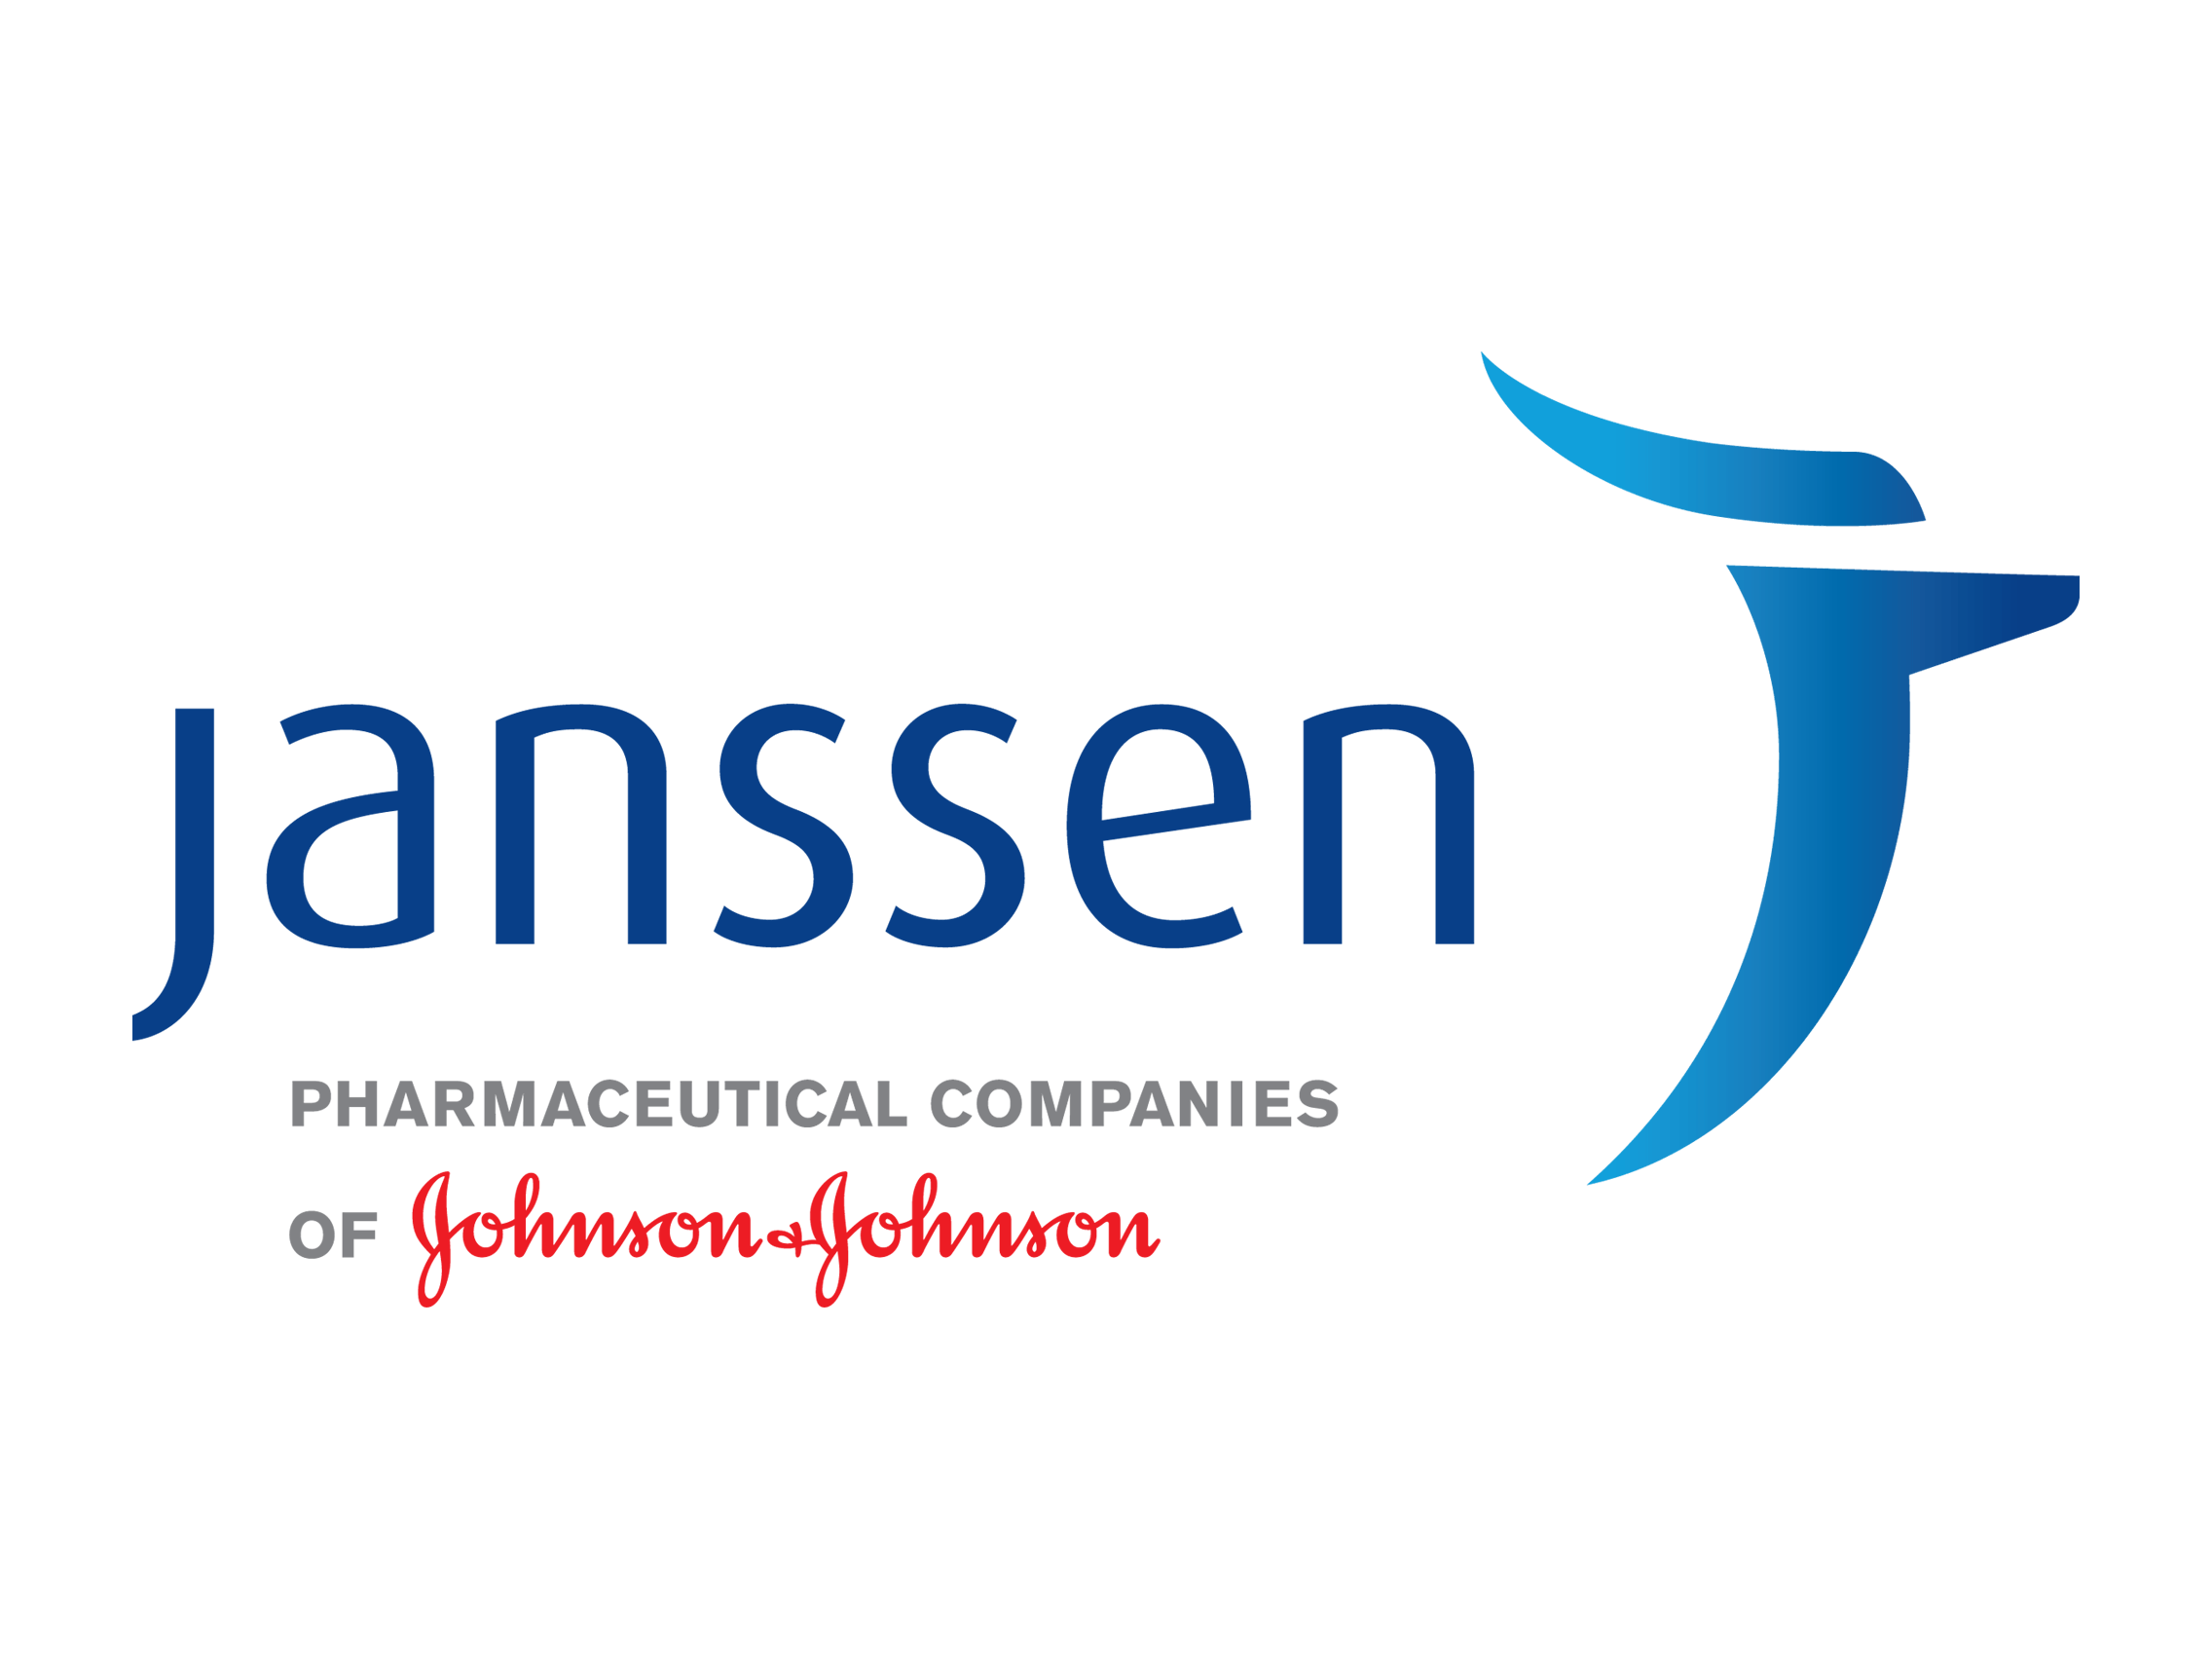 Janssen Logo - Janssen logo and jandj logo